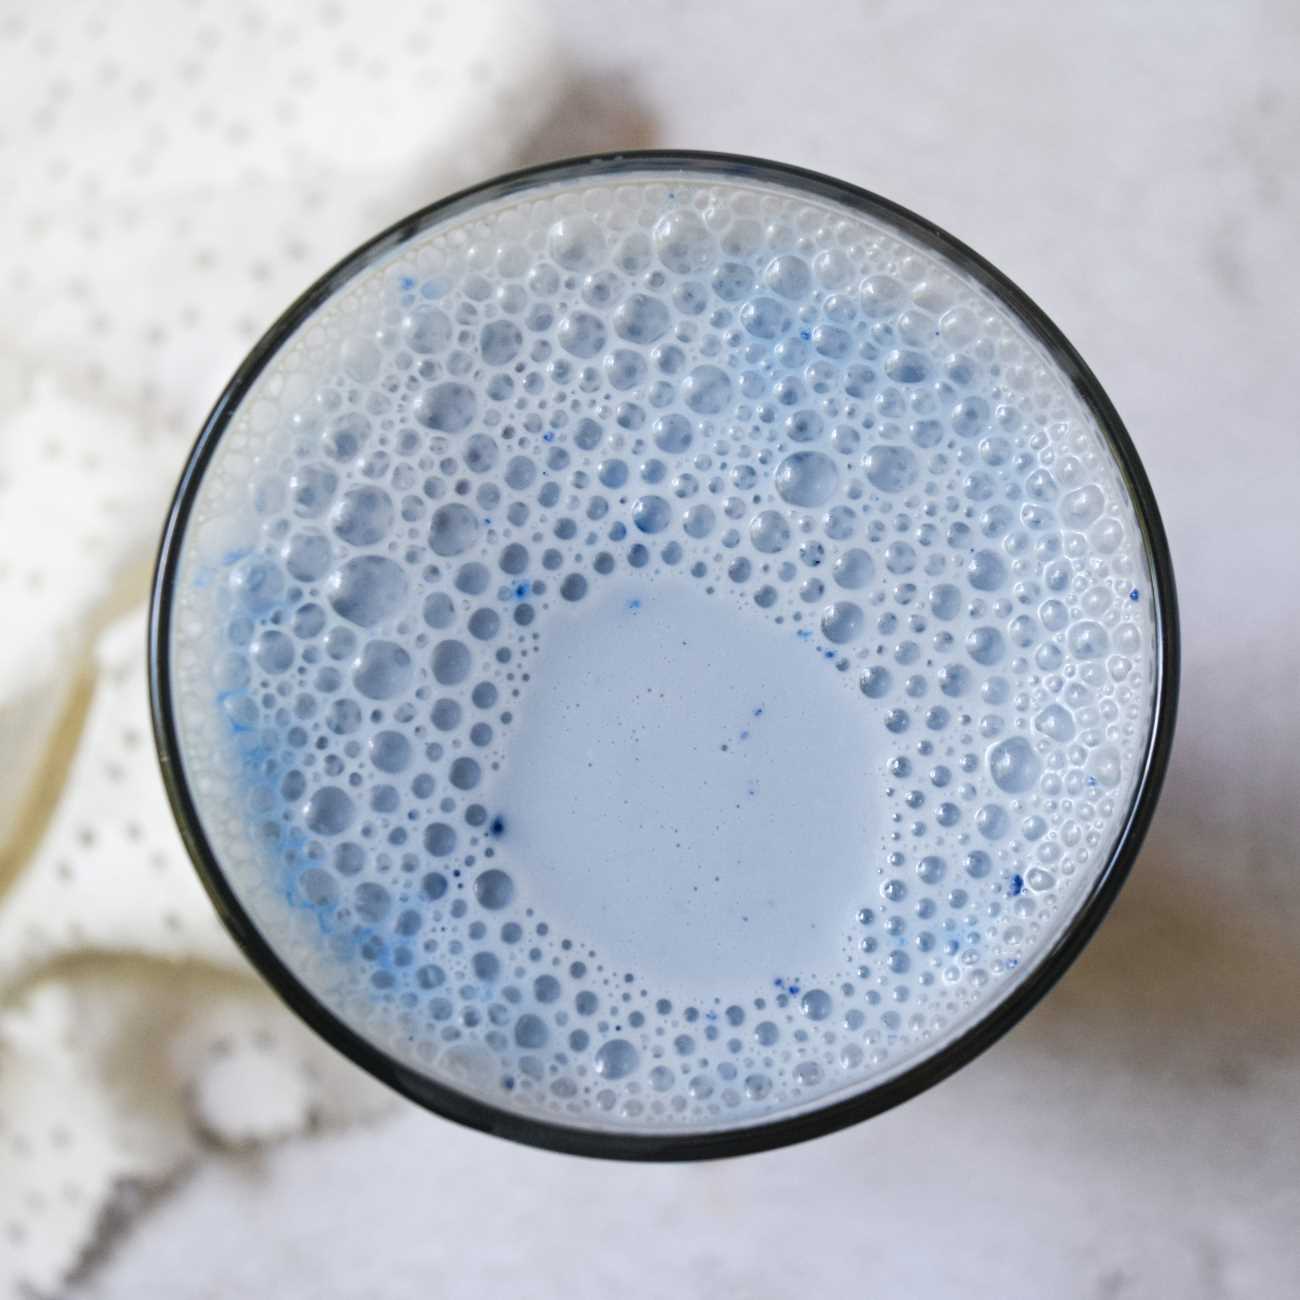 Blaue Mandelmilch wird von oben in einem Glas auf einem grauen Untergrund gezeigt.